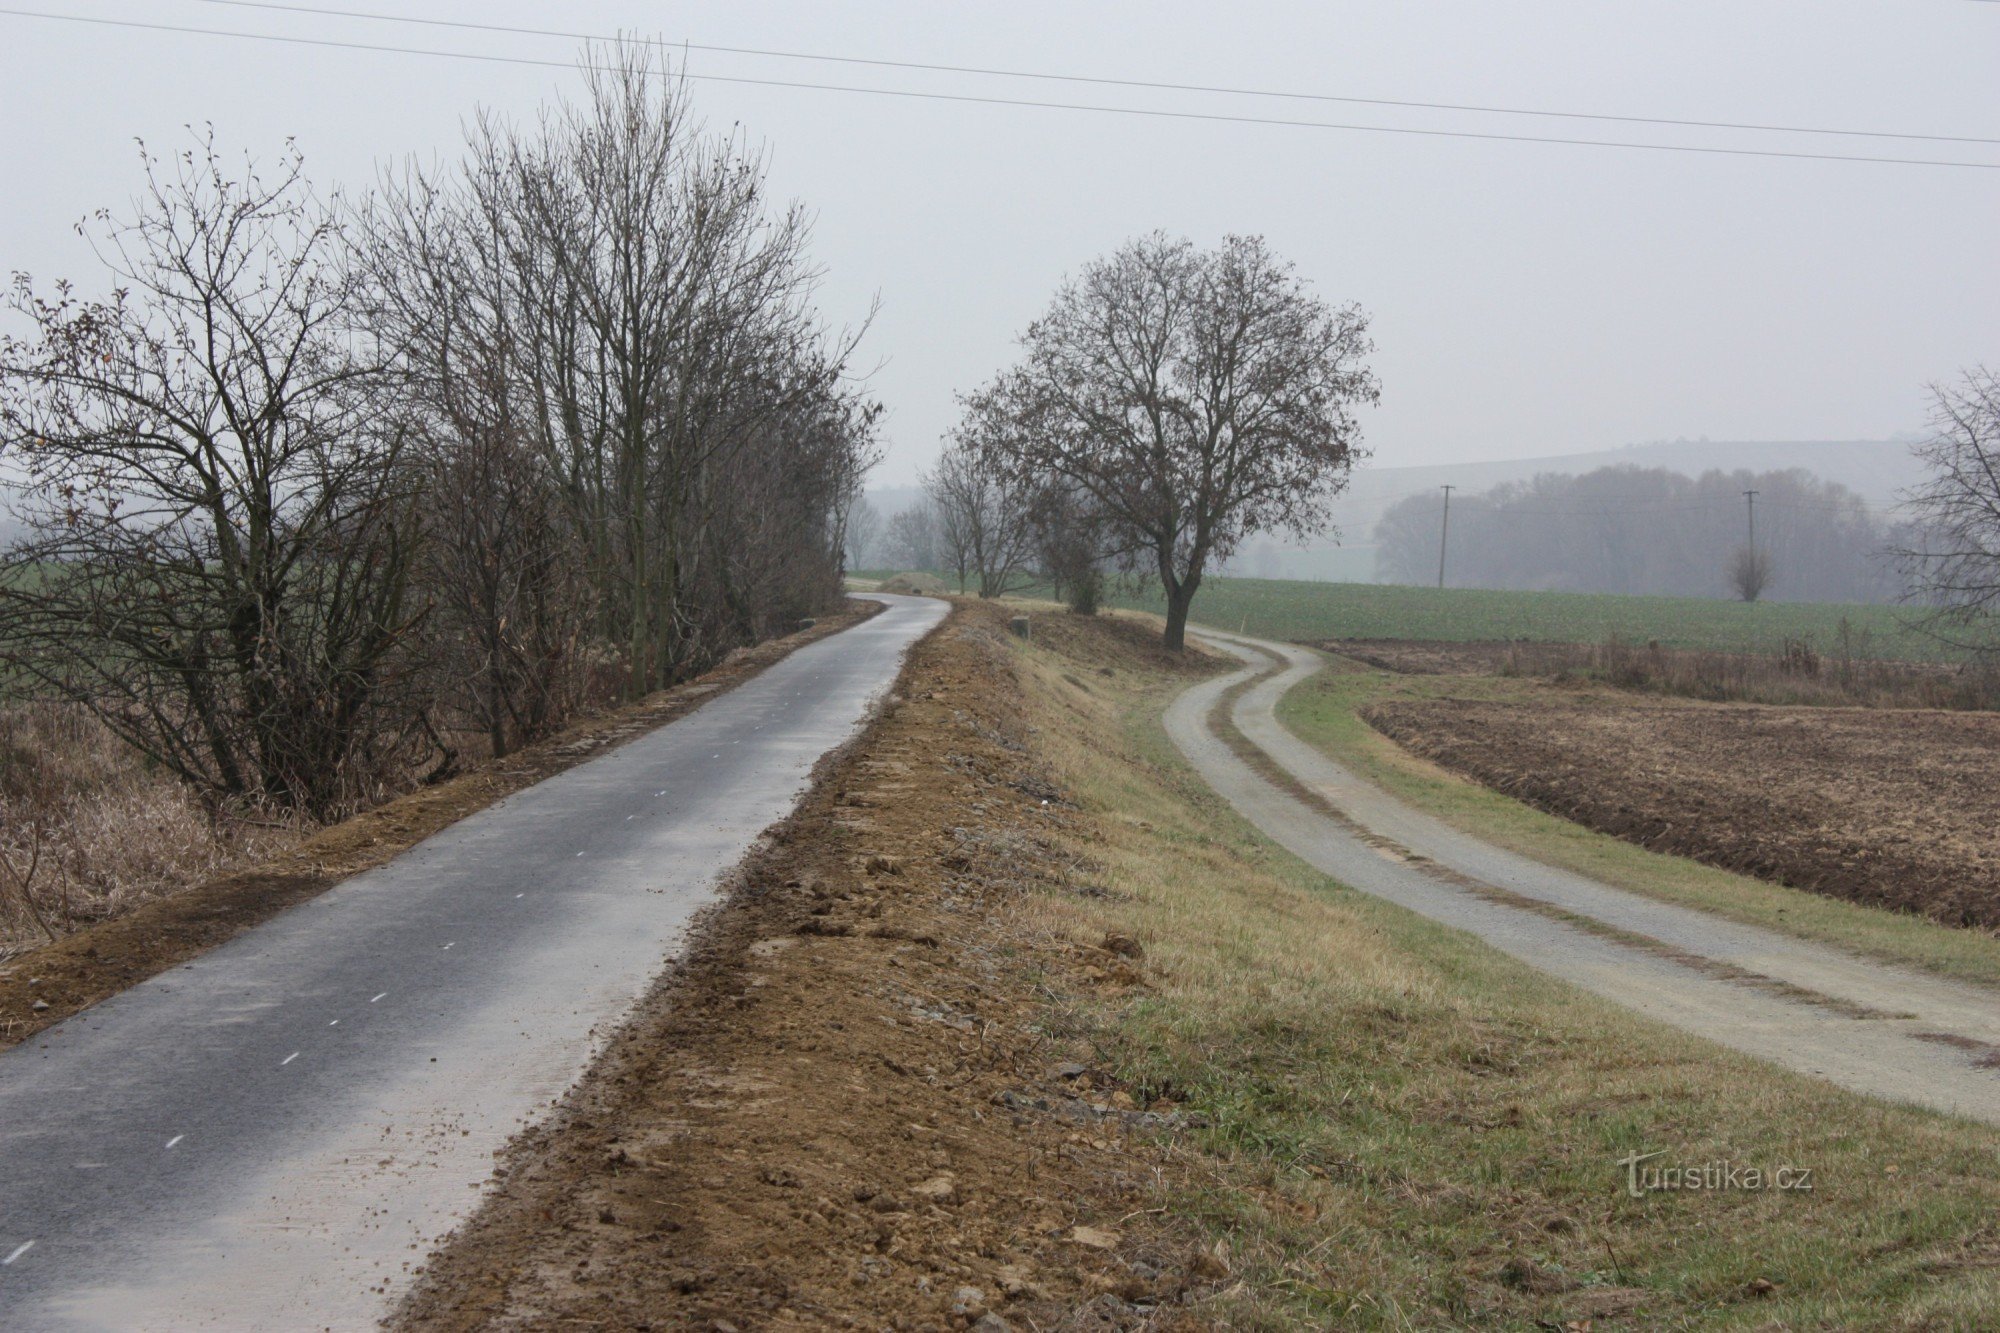 自行车道与 Tištín 附近的 Charváty 孤独之路同时出现